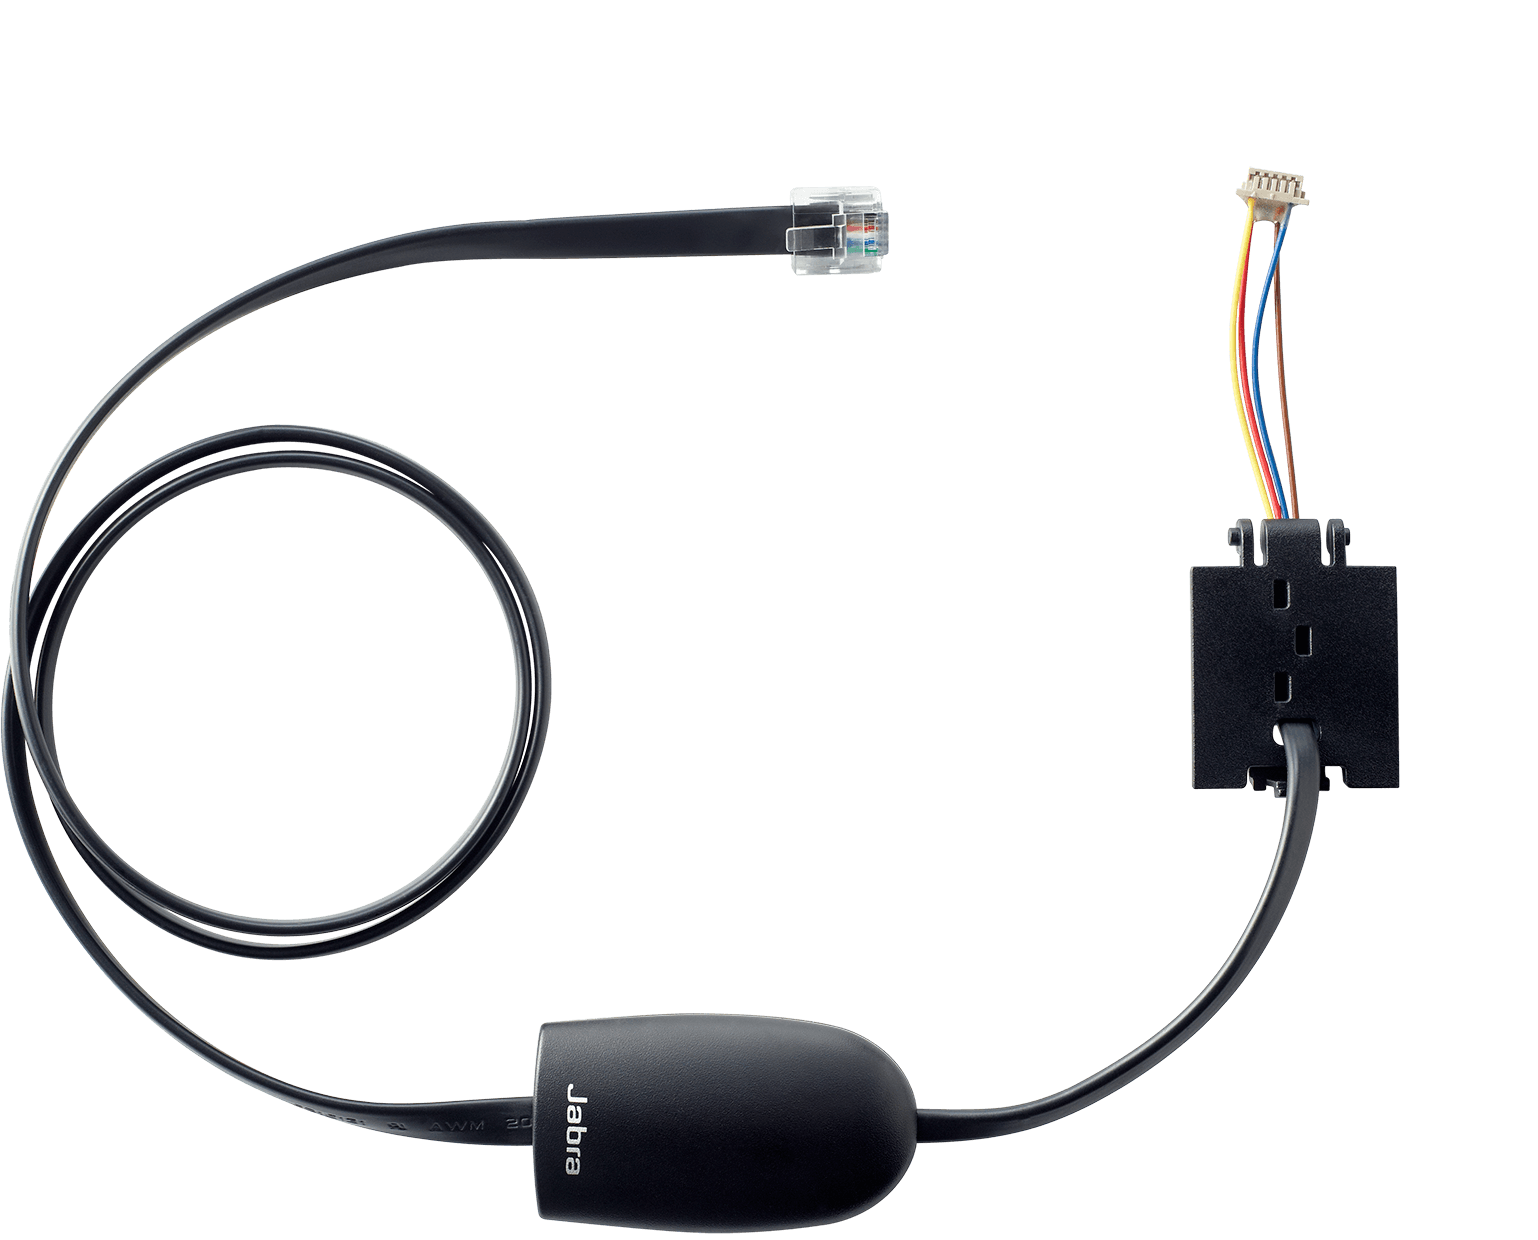 Hook Switch - Jabra Link / 14201-31 | 2109 – Interruptor de gancho electrónico, Solución para teléfonos NEC, Responder llamada, Finalizar llamada, Tono de llamada en los auriculares, Control de volumen, Silenciar control, Rechazar llamada, Volver a marcar